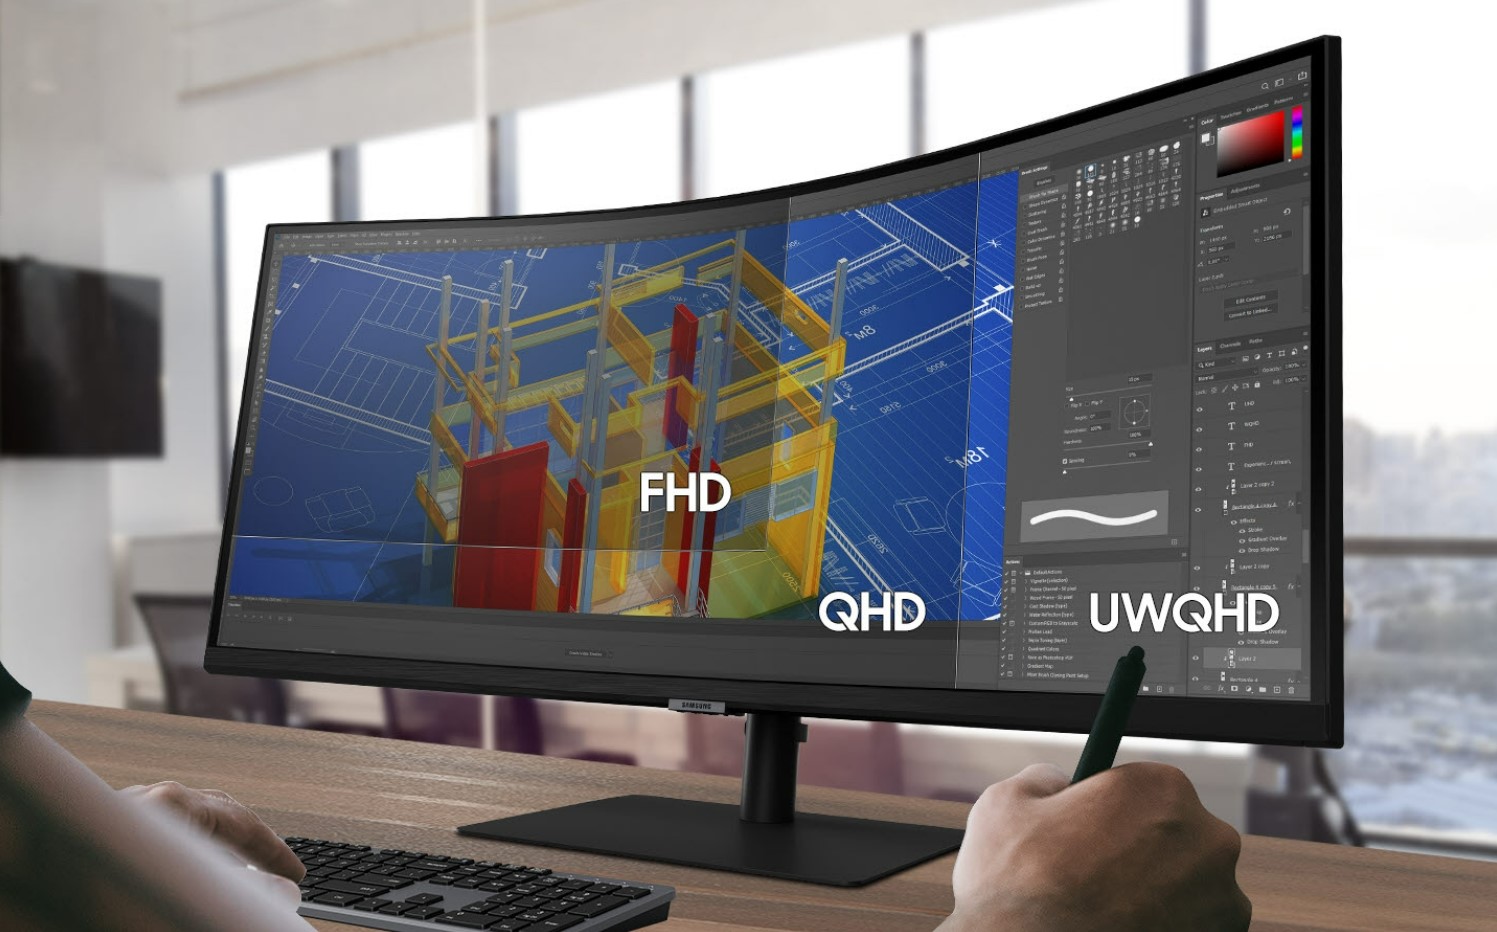 UWQHD rozlenie na monitore Samsung S65UA a rozdiel medzi GHD a FHD